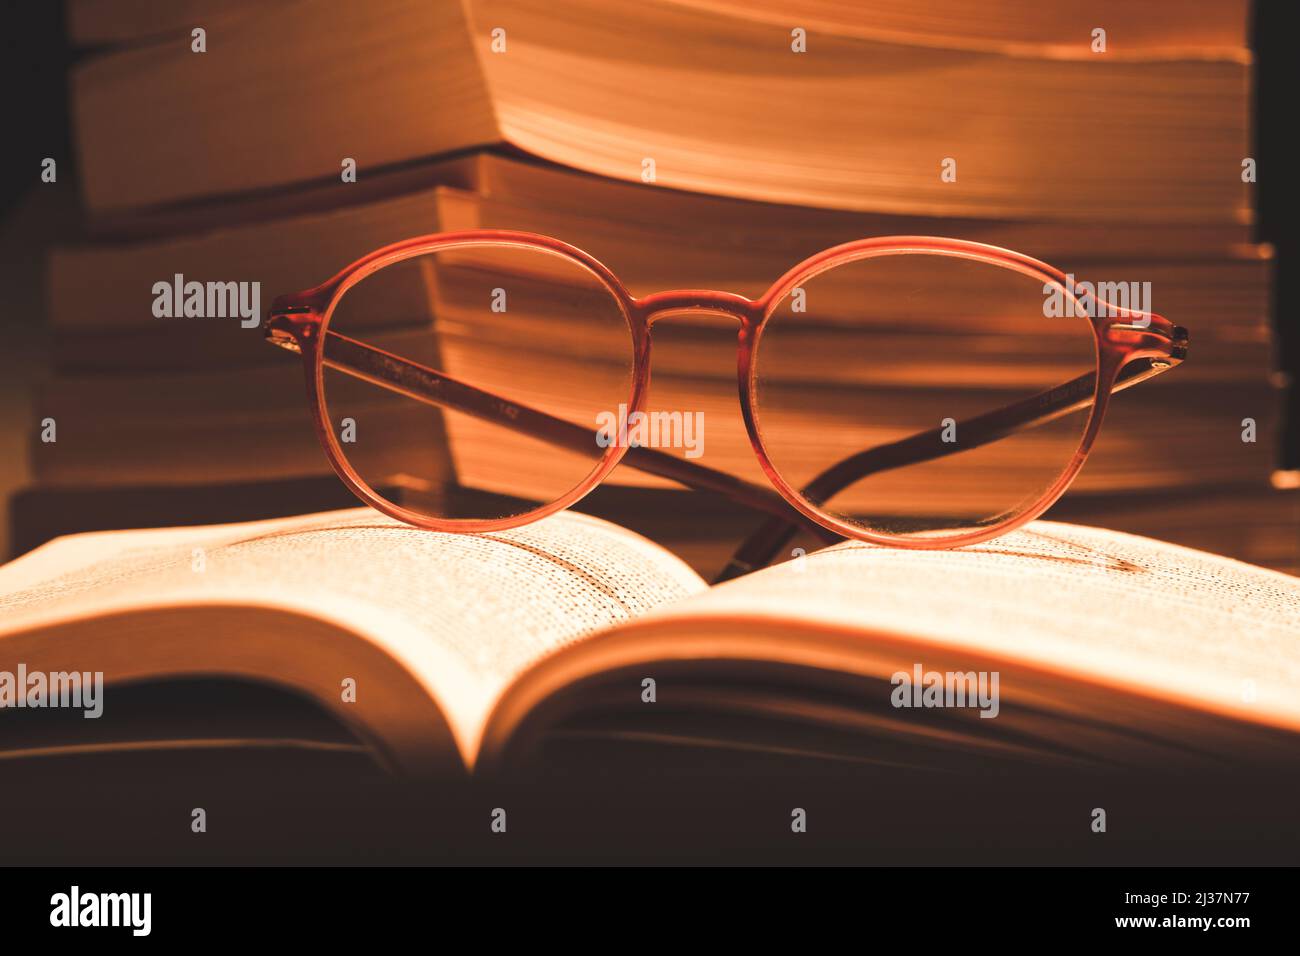 Brille auf Buch im selektiven Fokus. Bücher sind nicht fokussiert. Buchlesung, Bildung, Ruhe, Wissenskonzept vintage Hintergrund. Stockfoto